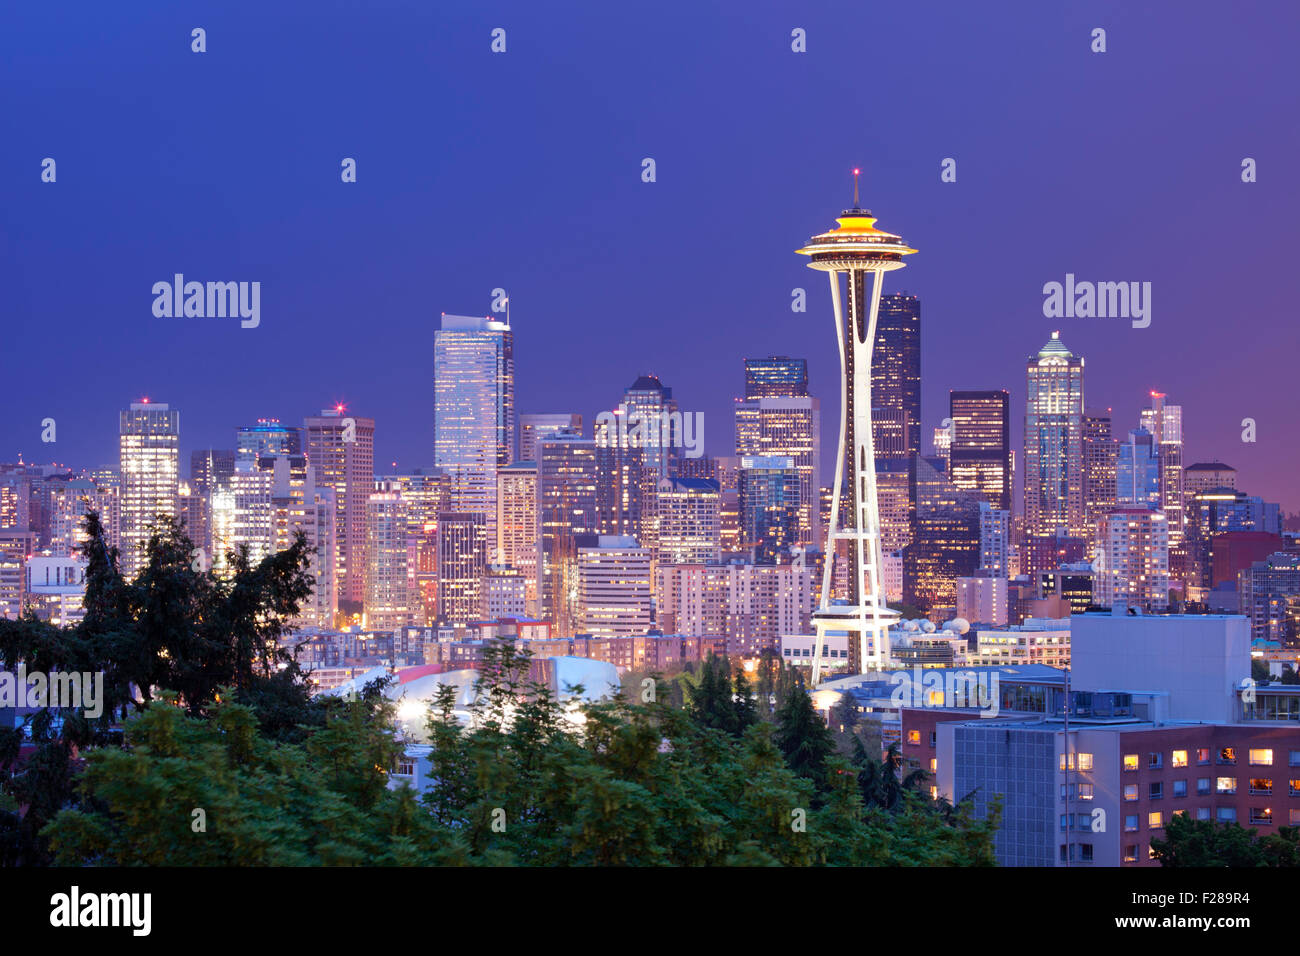 La Space Needle et l'horizon de Seattle à Washington, États-Unis. Photographié dans la nuit. Banque D'Images